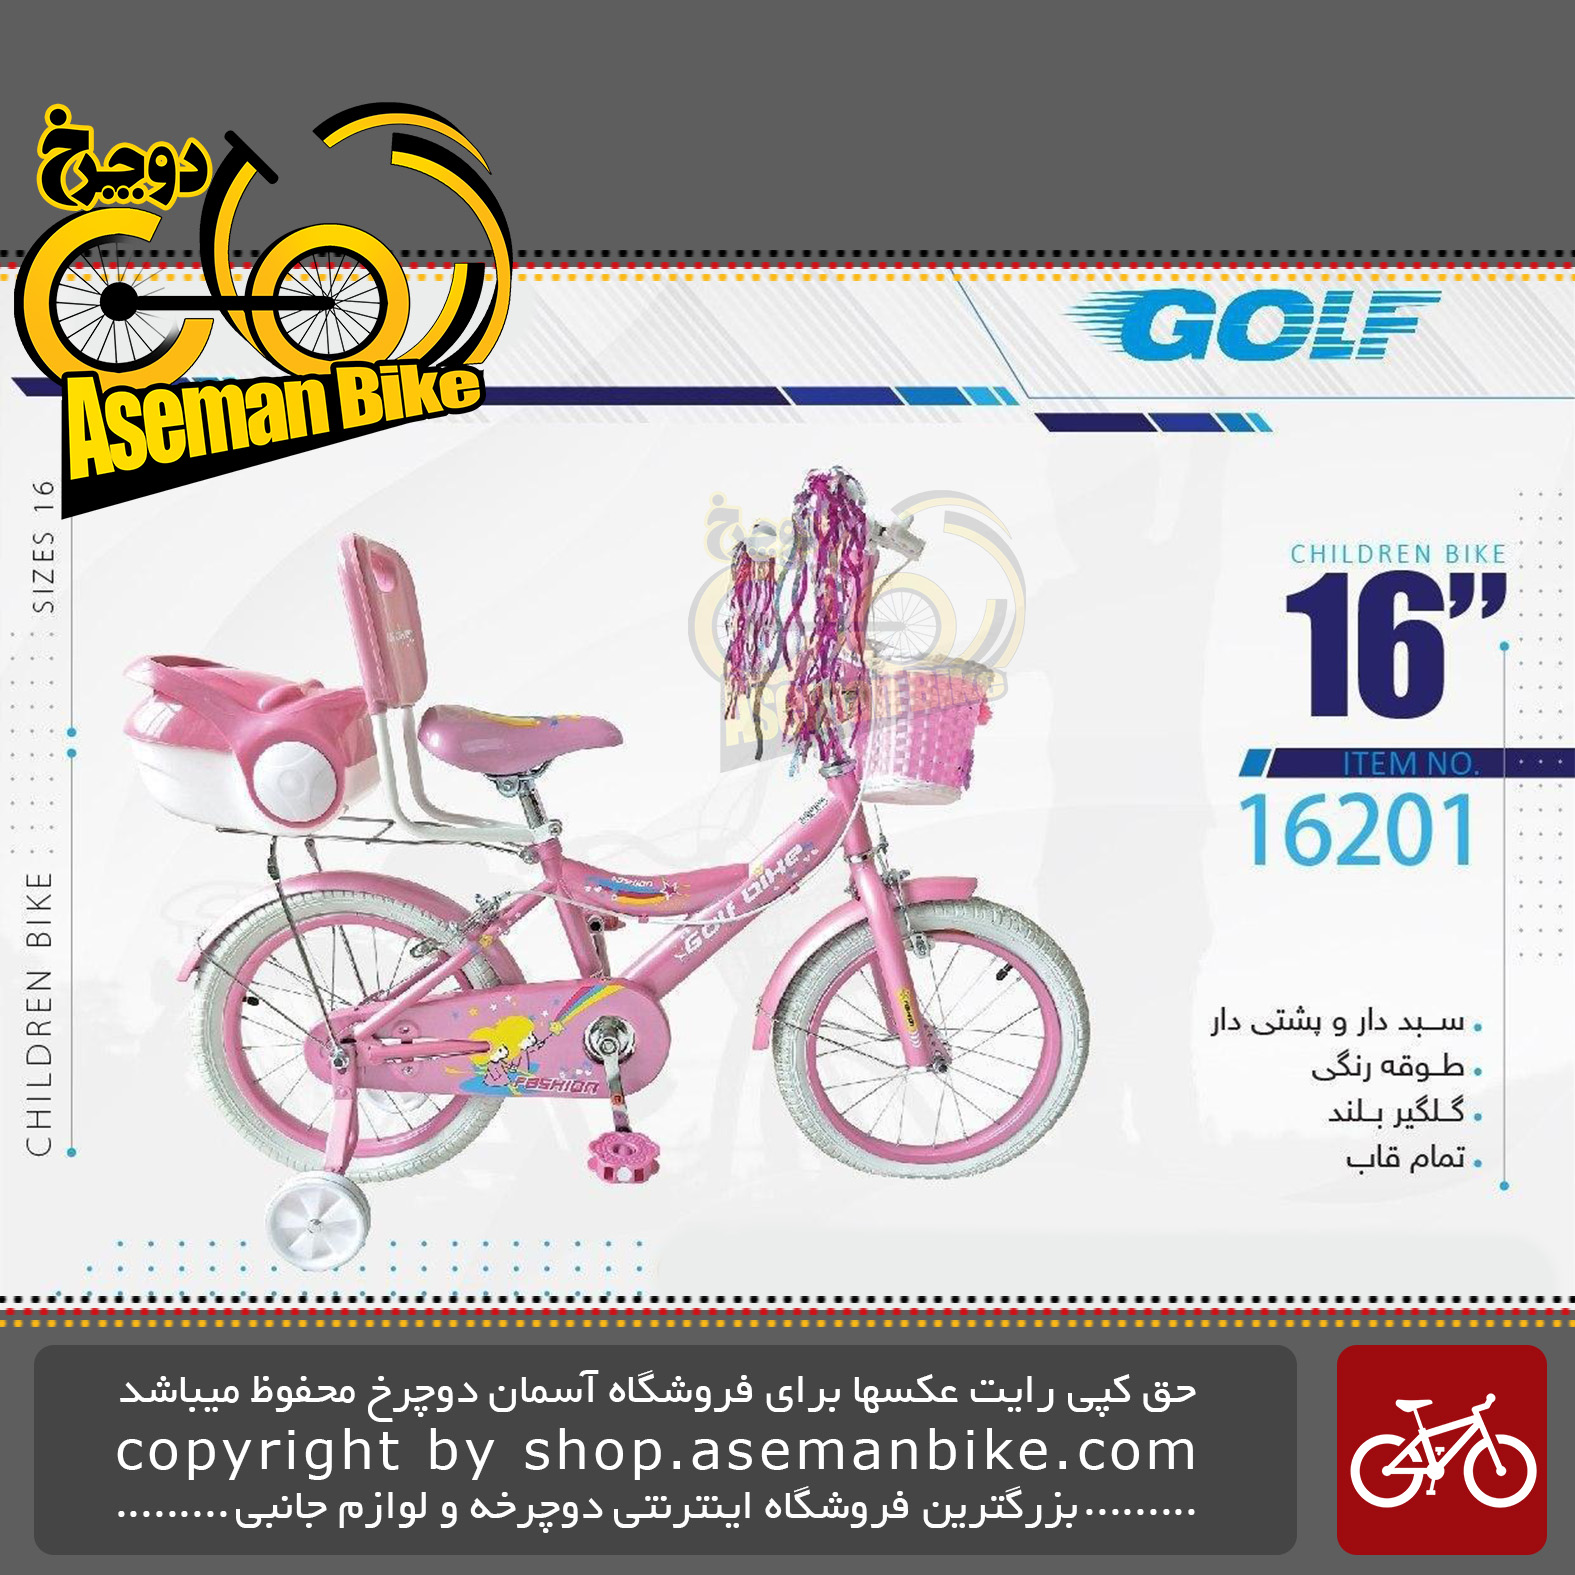 دوچرخه دخترانه بچگانه گلف سایز 16 ترکبندار کیف دار مدل 16201 GOLF Bicycle Kids Size 16 Model 16201